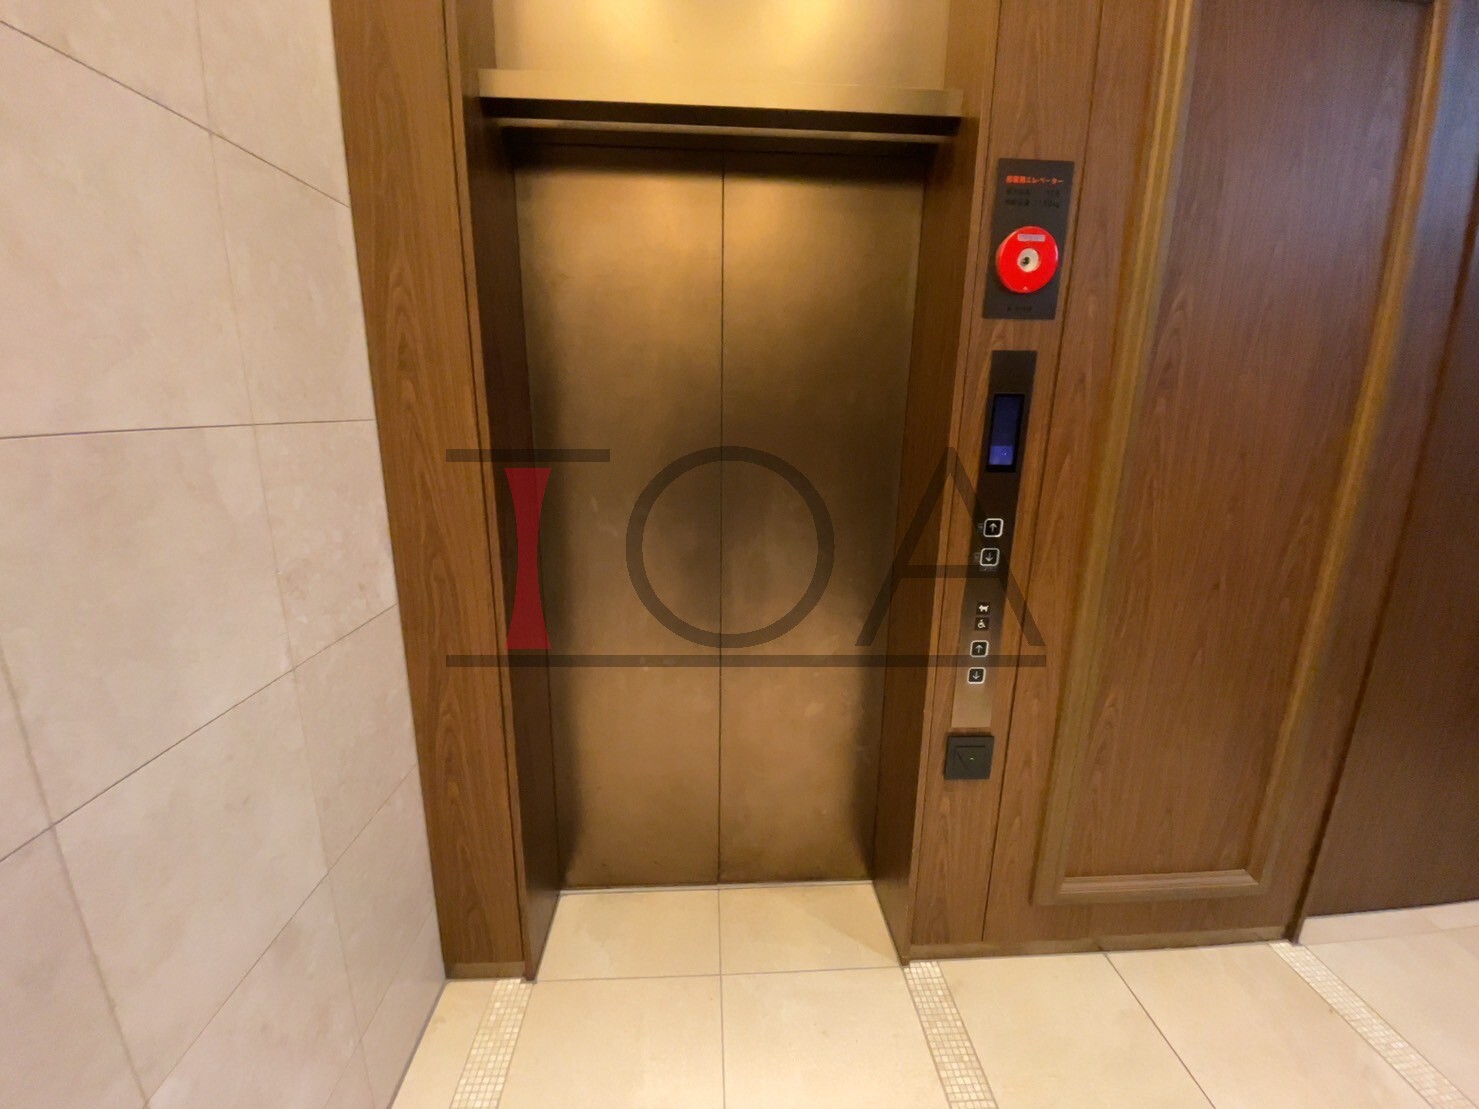 エレベーター前